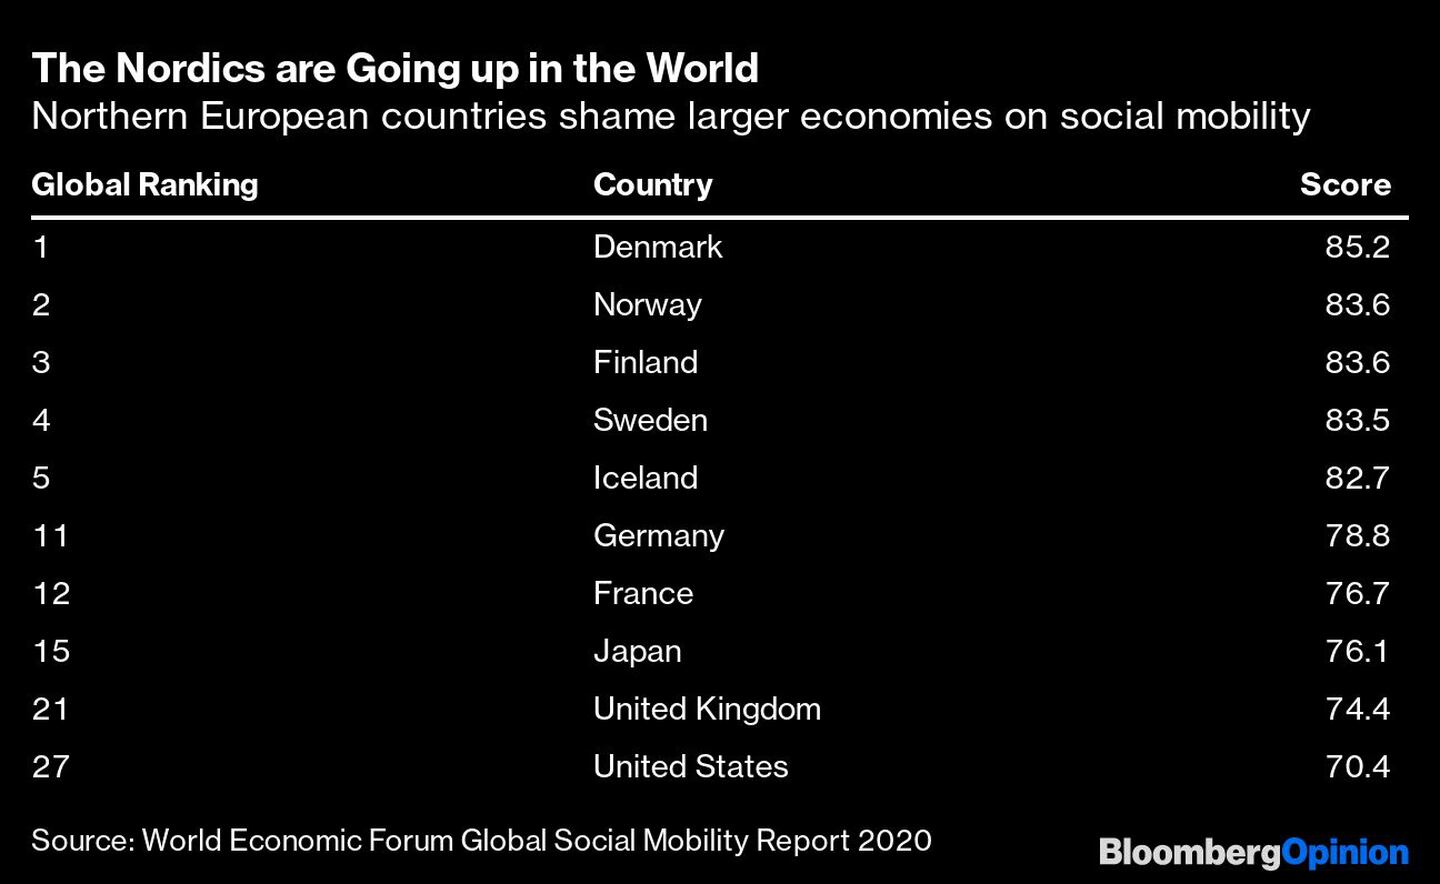 Los nórdicos suben en el mundo
Los países del norte de Europa avergüenzan a las economías más grandes en materia de movilidad social
Por orden de clasificación mundial: Dinamarca, Noruega, Finlandia, Suecia, Islandia, Alemania, Francia, Japón, Reino Unido y Estados Unidosdfd